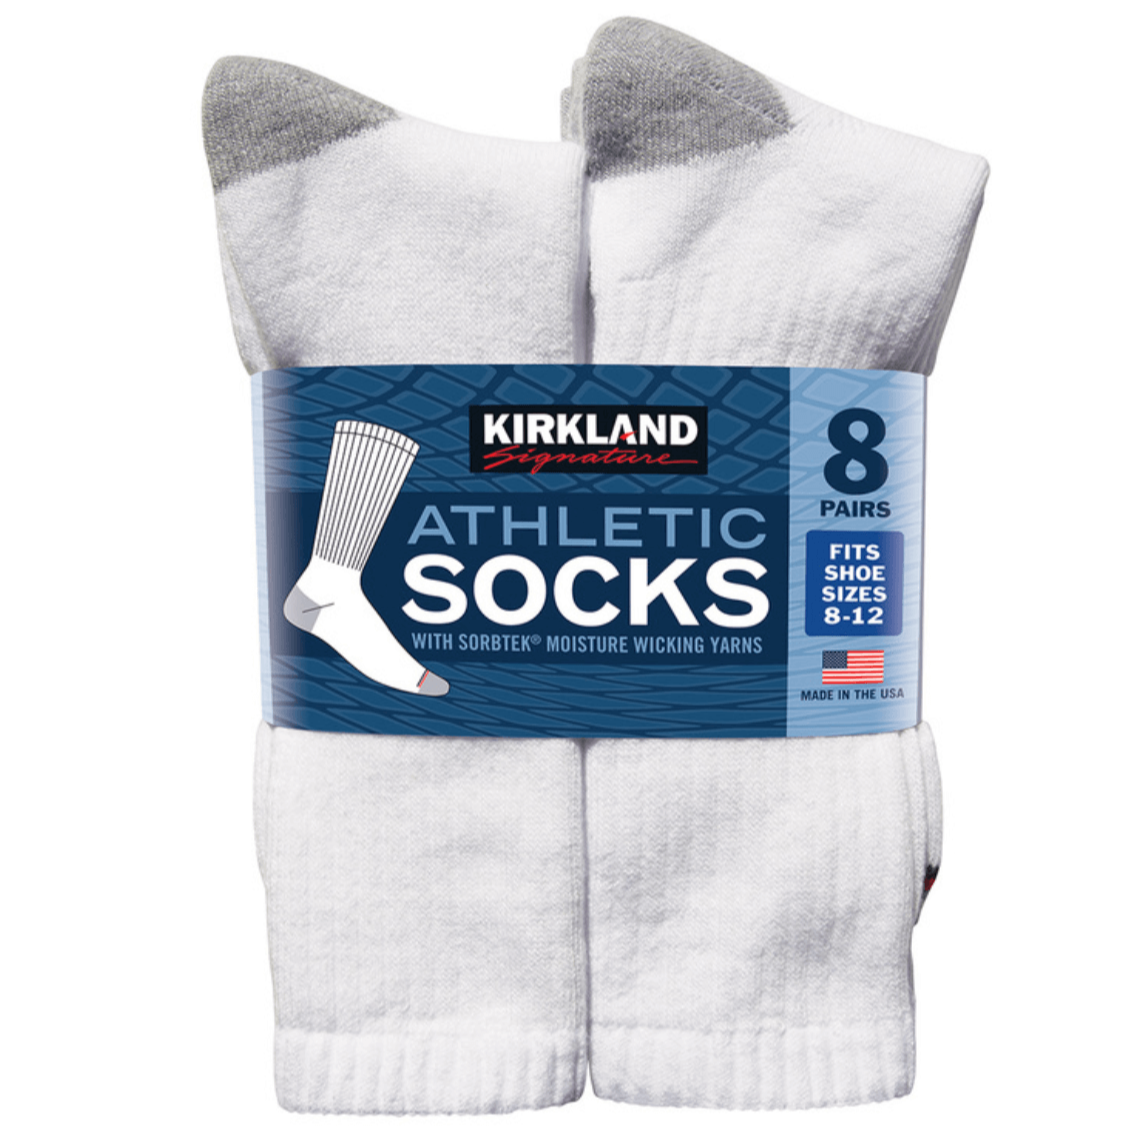 Kirkland Athletic Socks